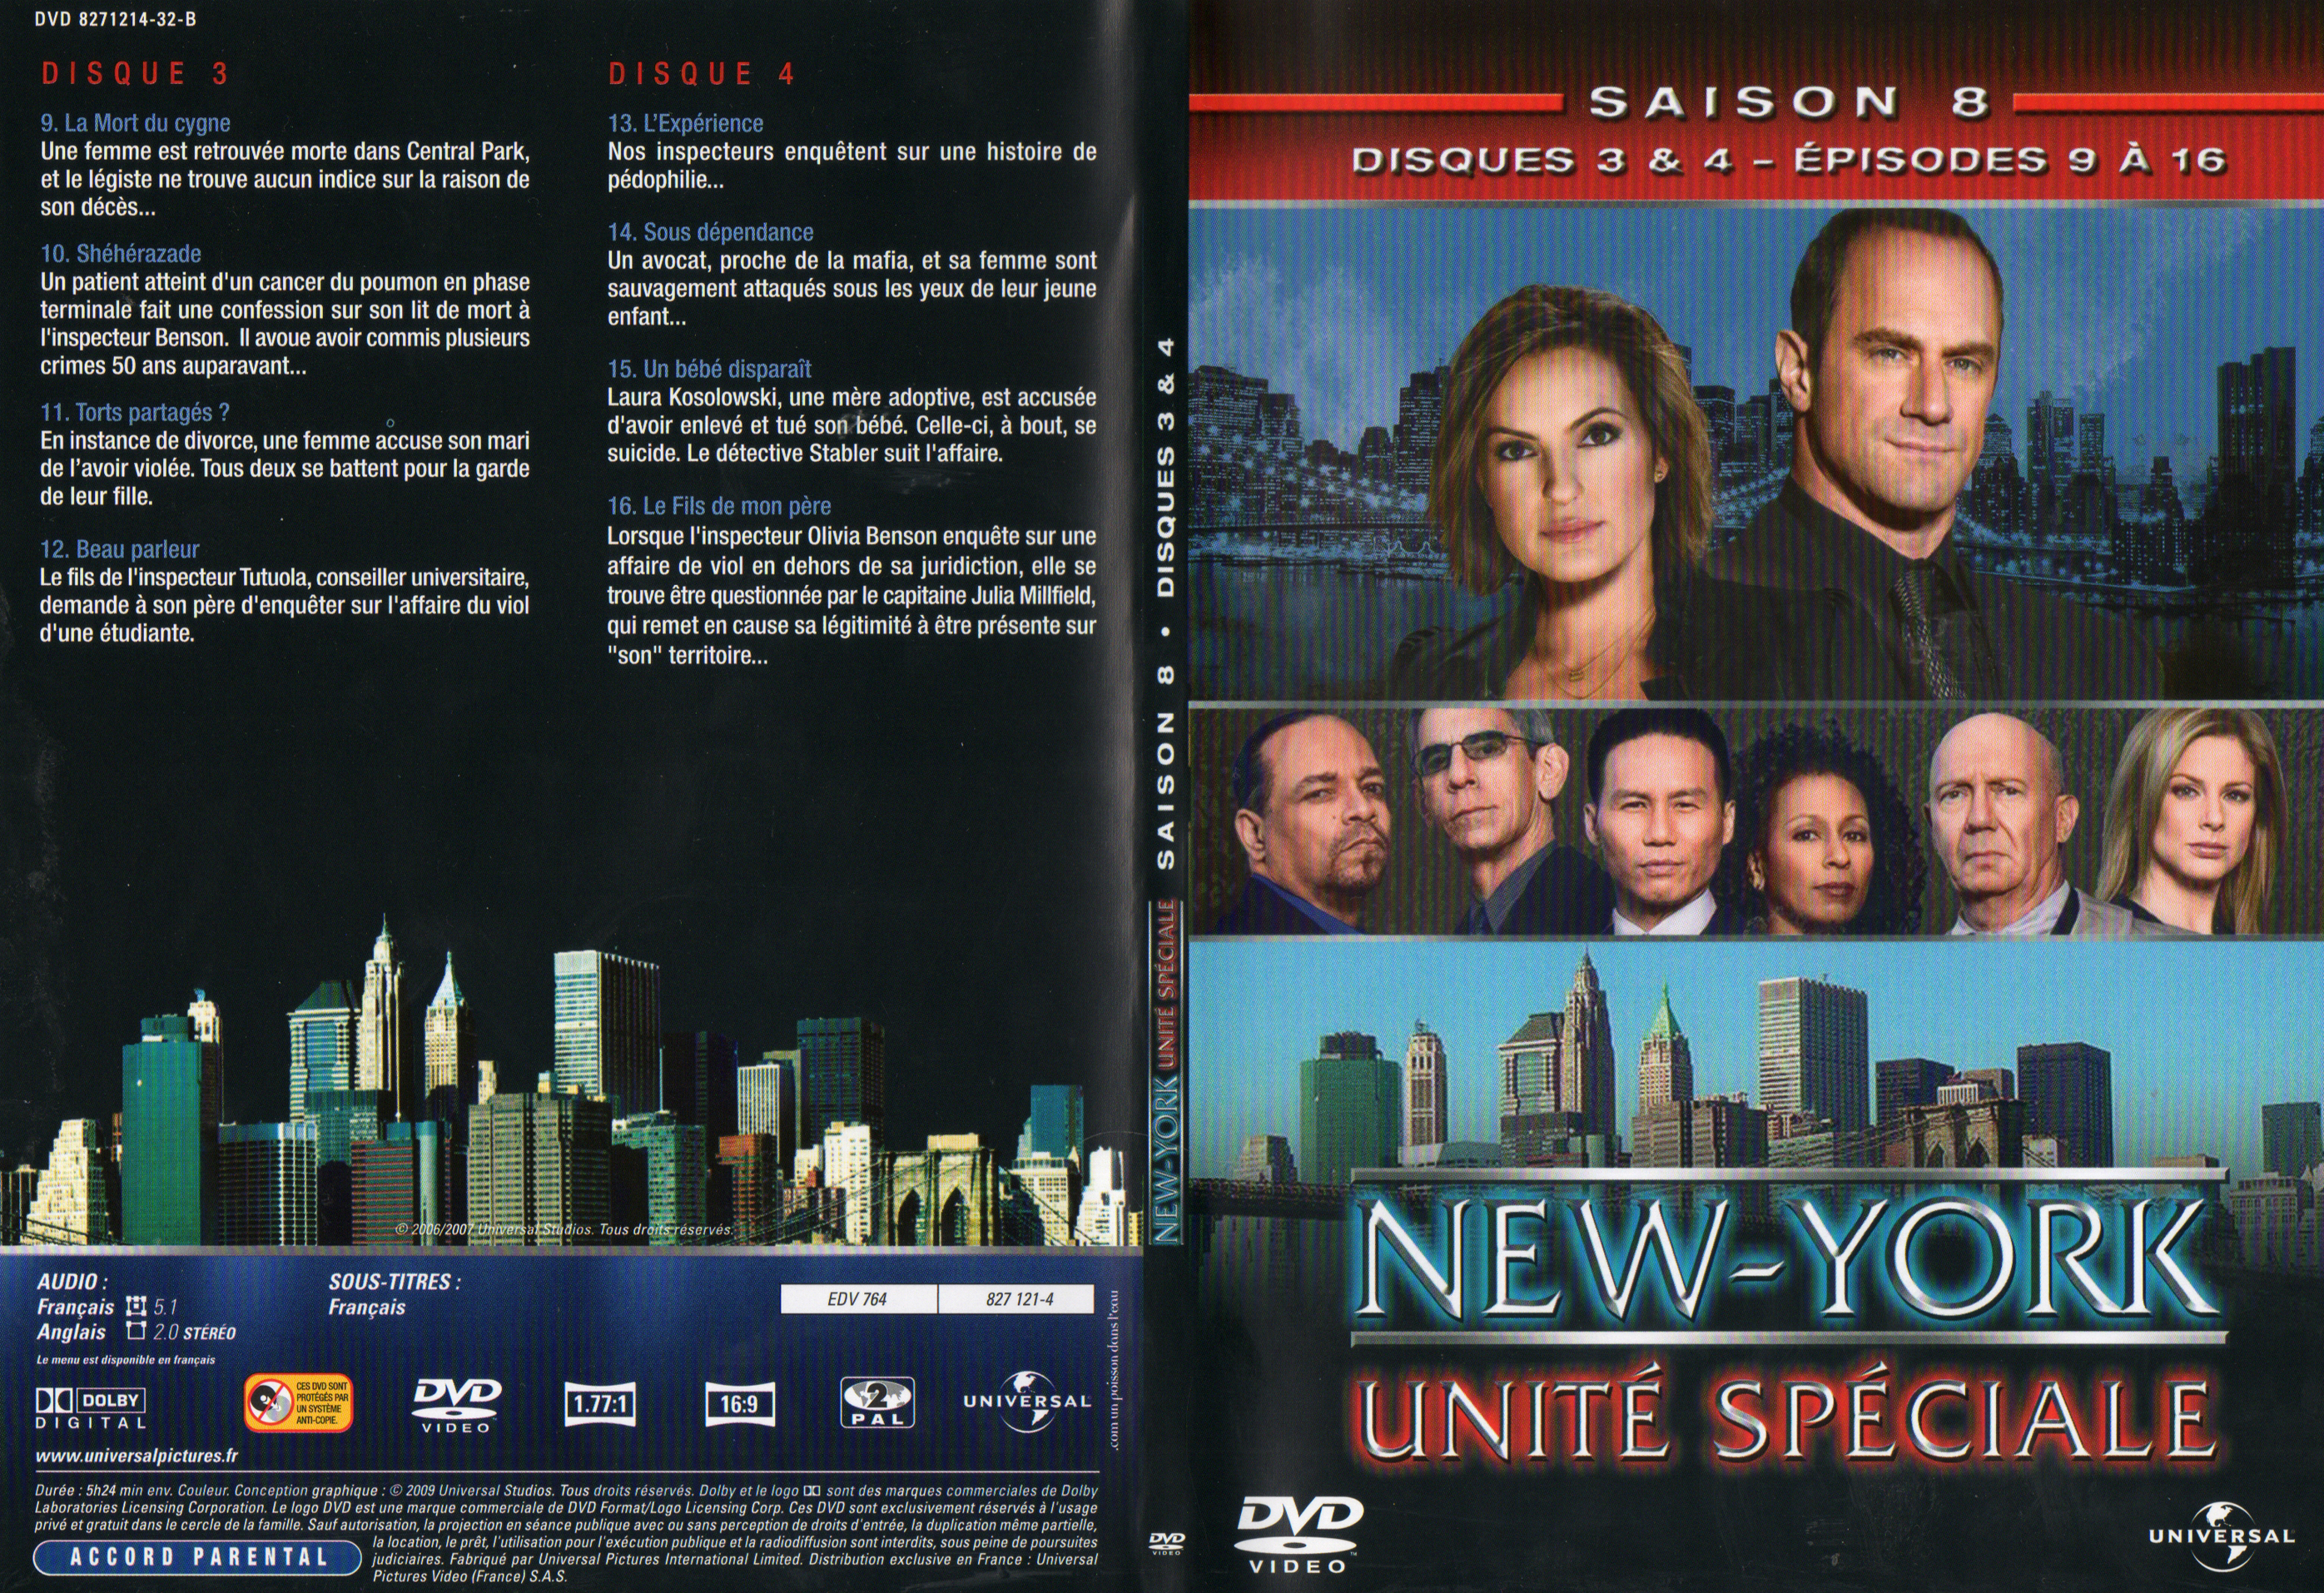 Jaquette DVD New York unit spciale saison 8 DVD 2